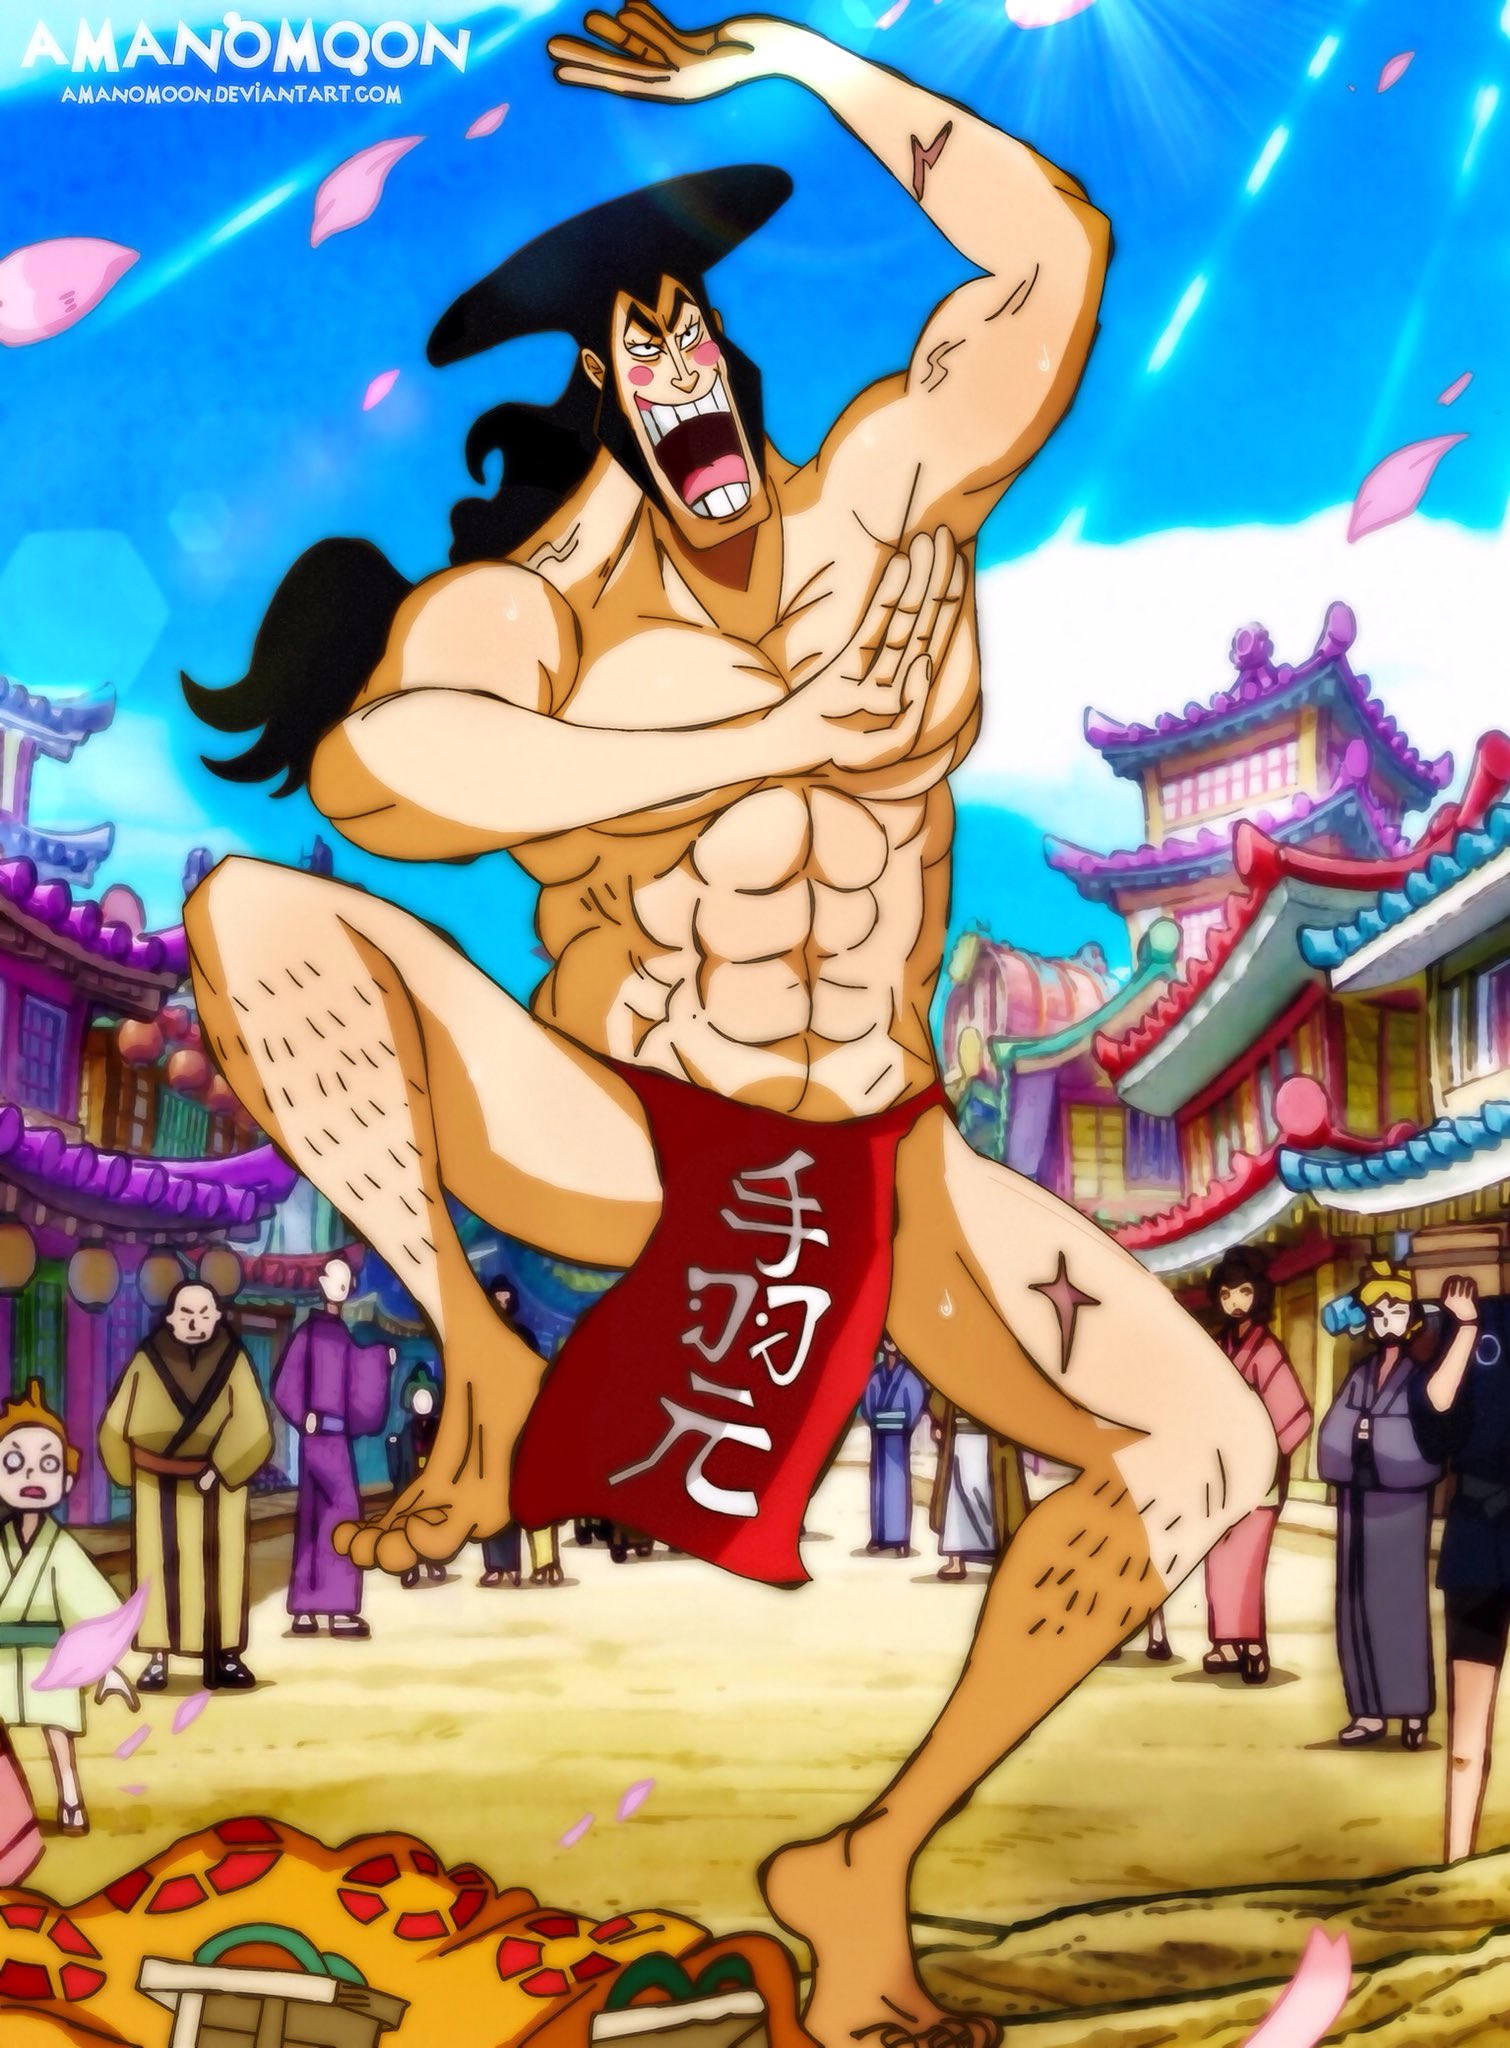 One Piece Chap 969 Oden Kozuki Humilation Dance By Amanomoon On Deviantart